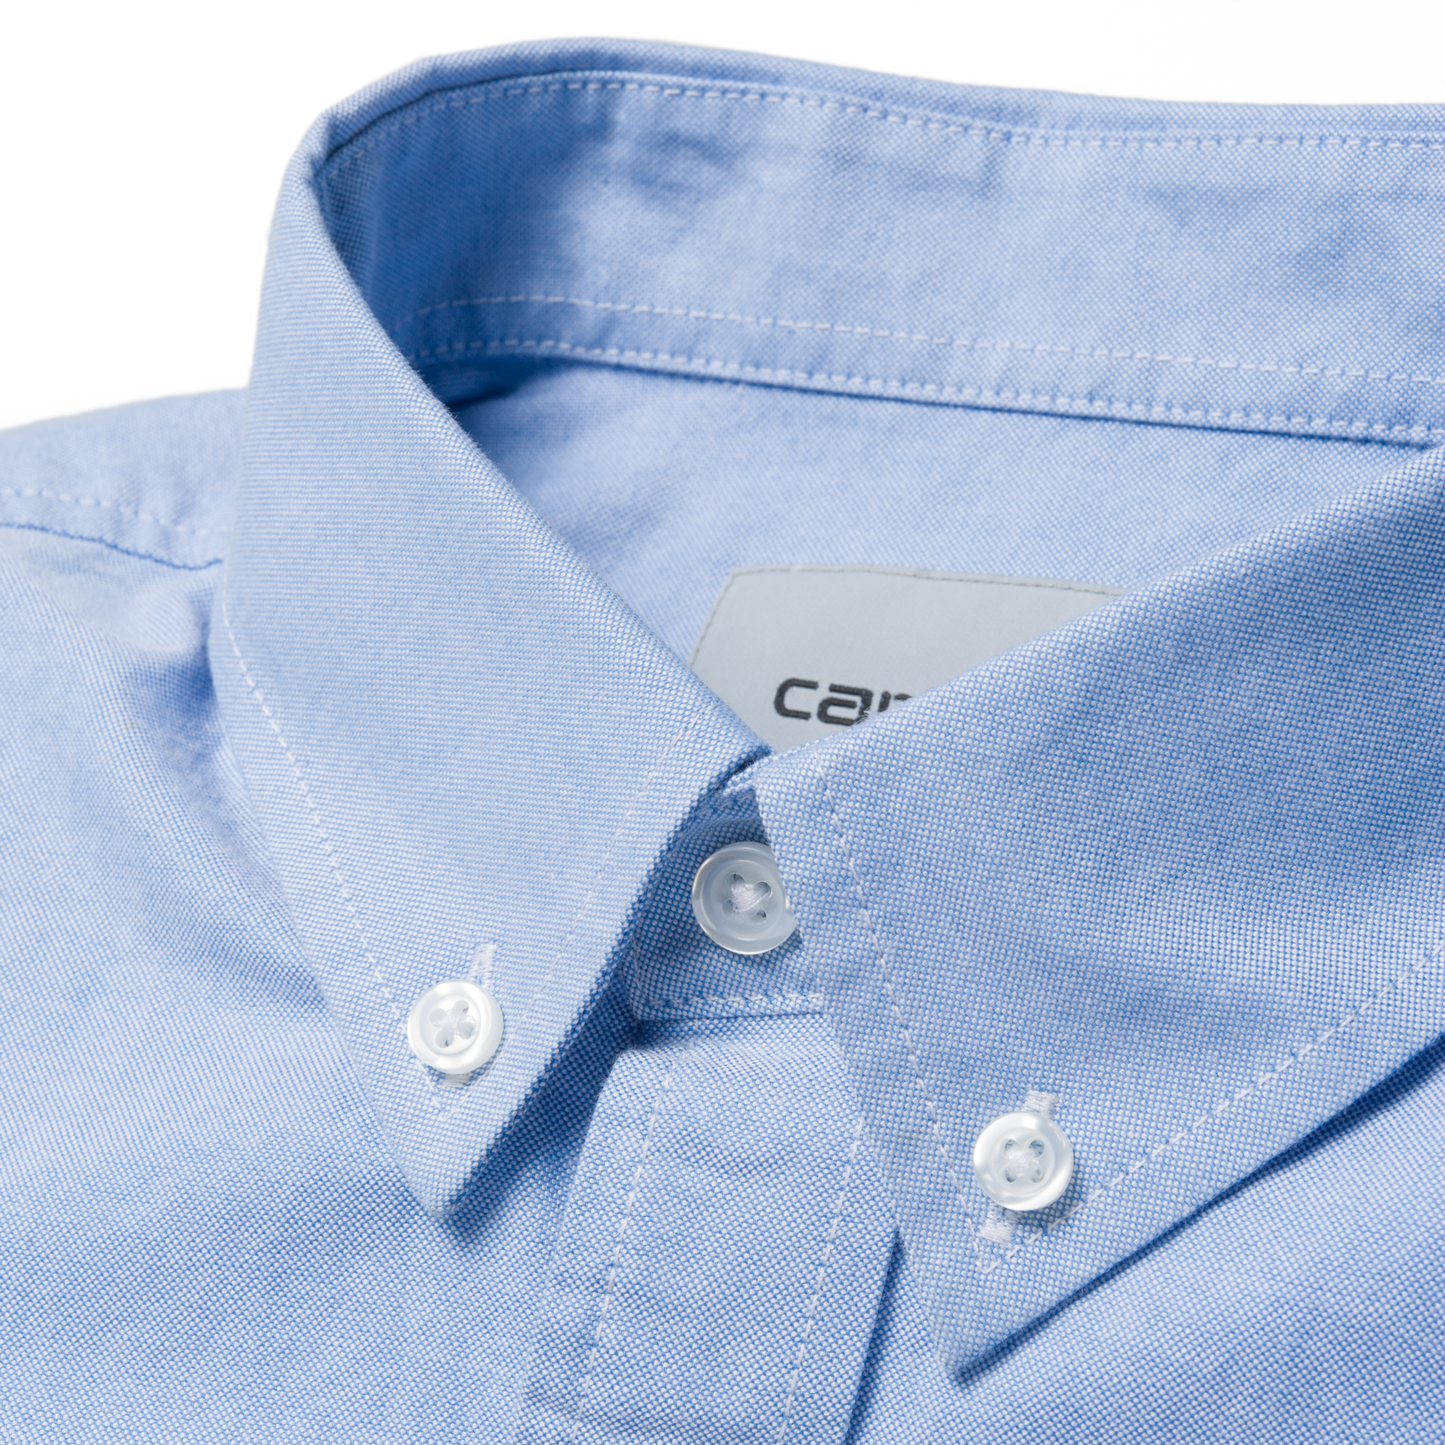 Carhartt WIP LS Button Down Shirt